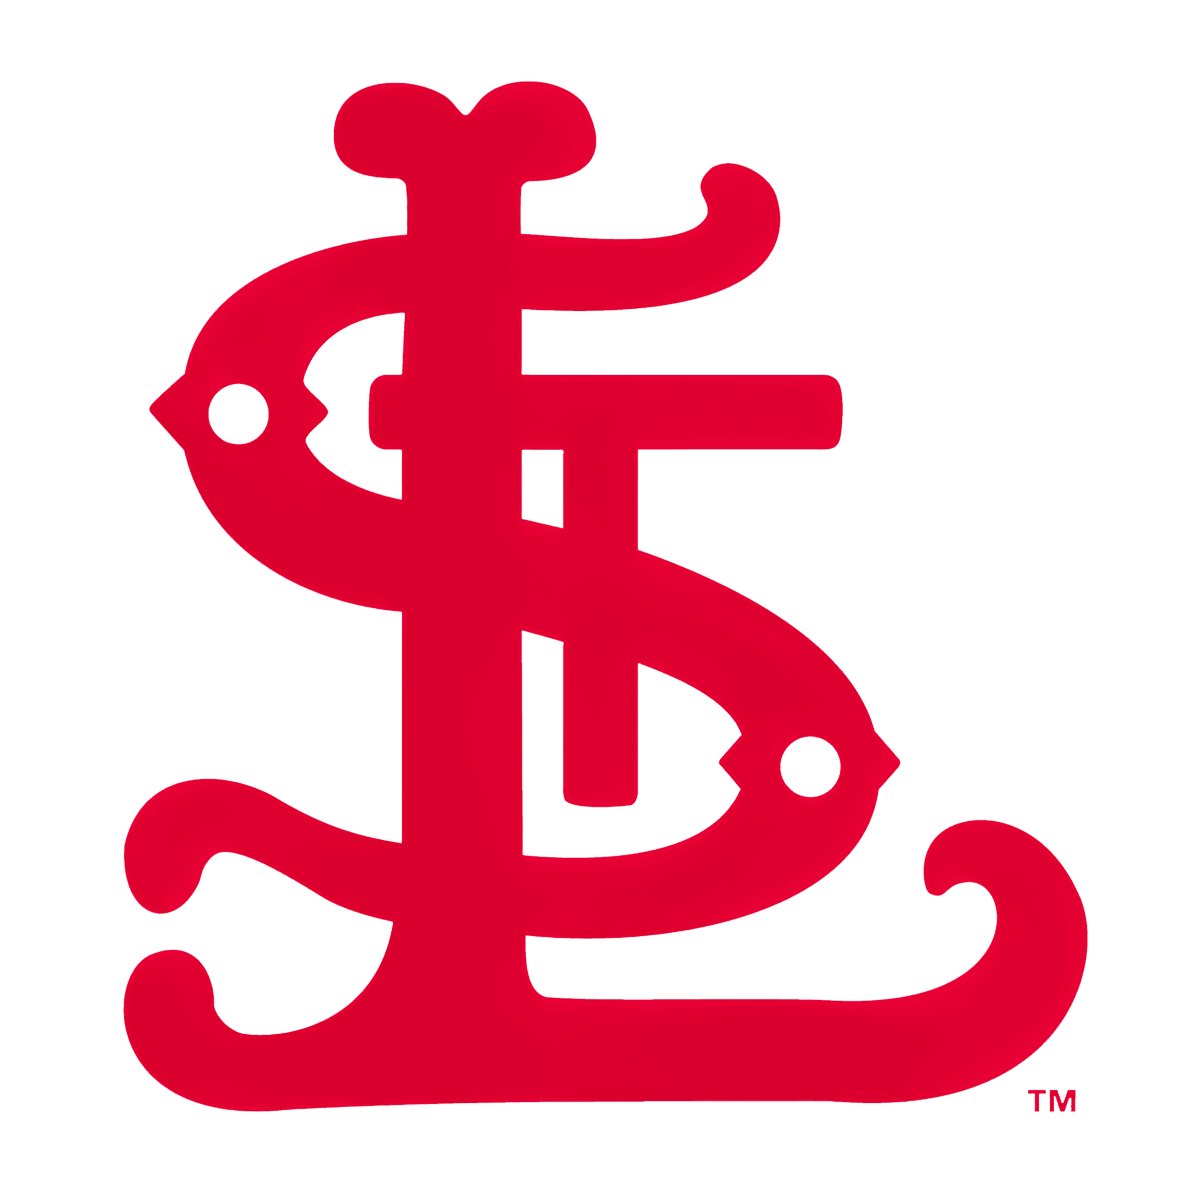 St. Louis Cardinals Logo 1900-1919